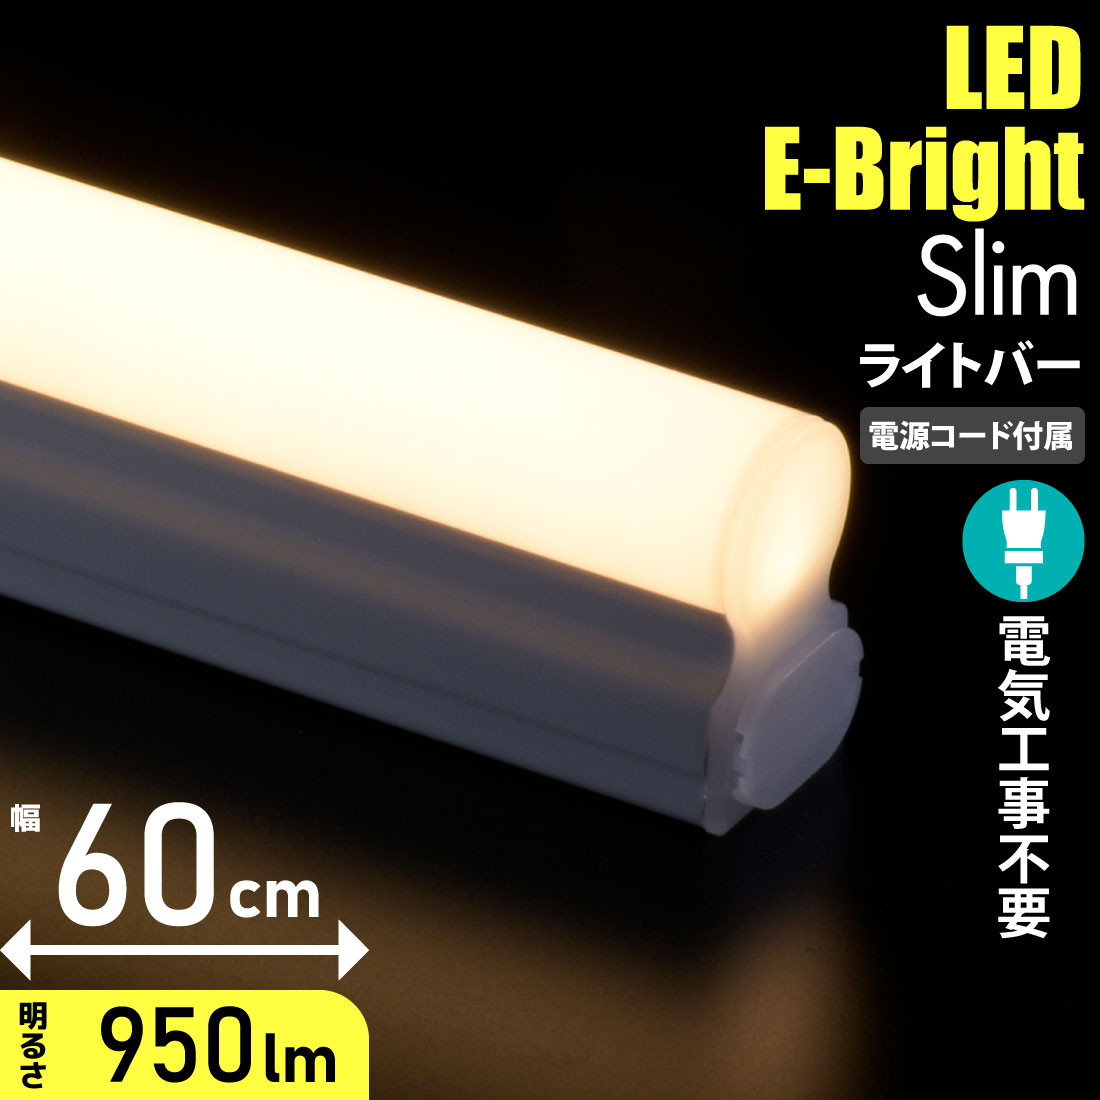 LEDエコスリムチューブライト 電源コード付き コンセントタイプ 昼光色